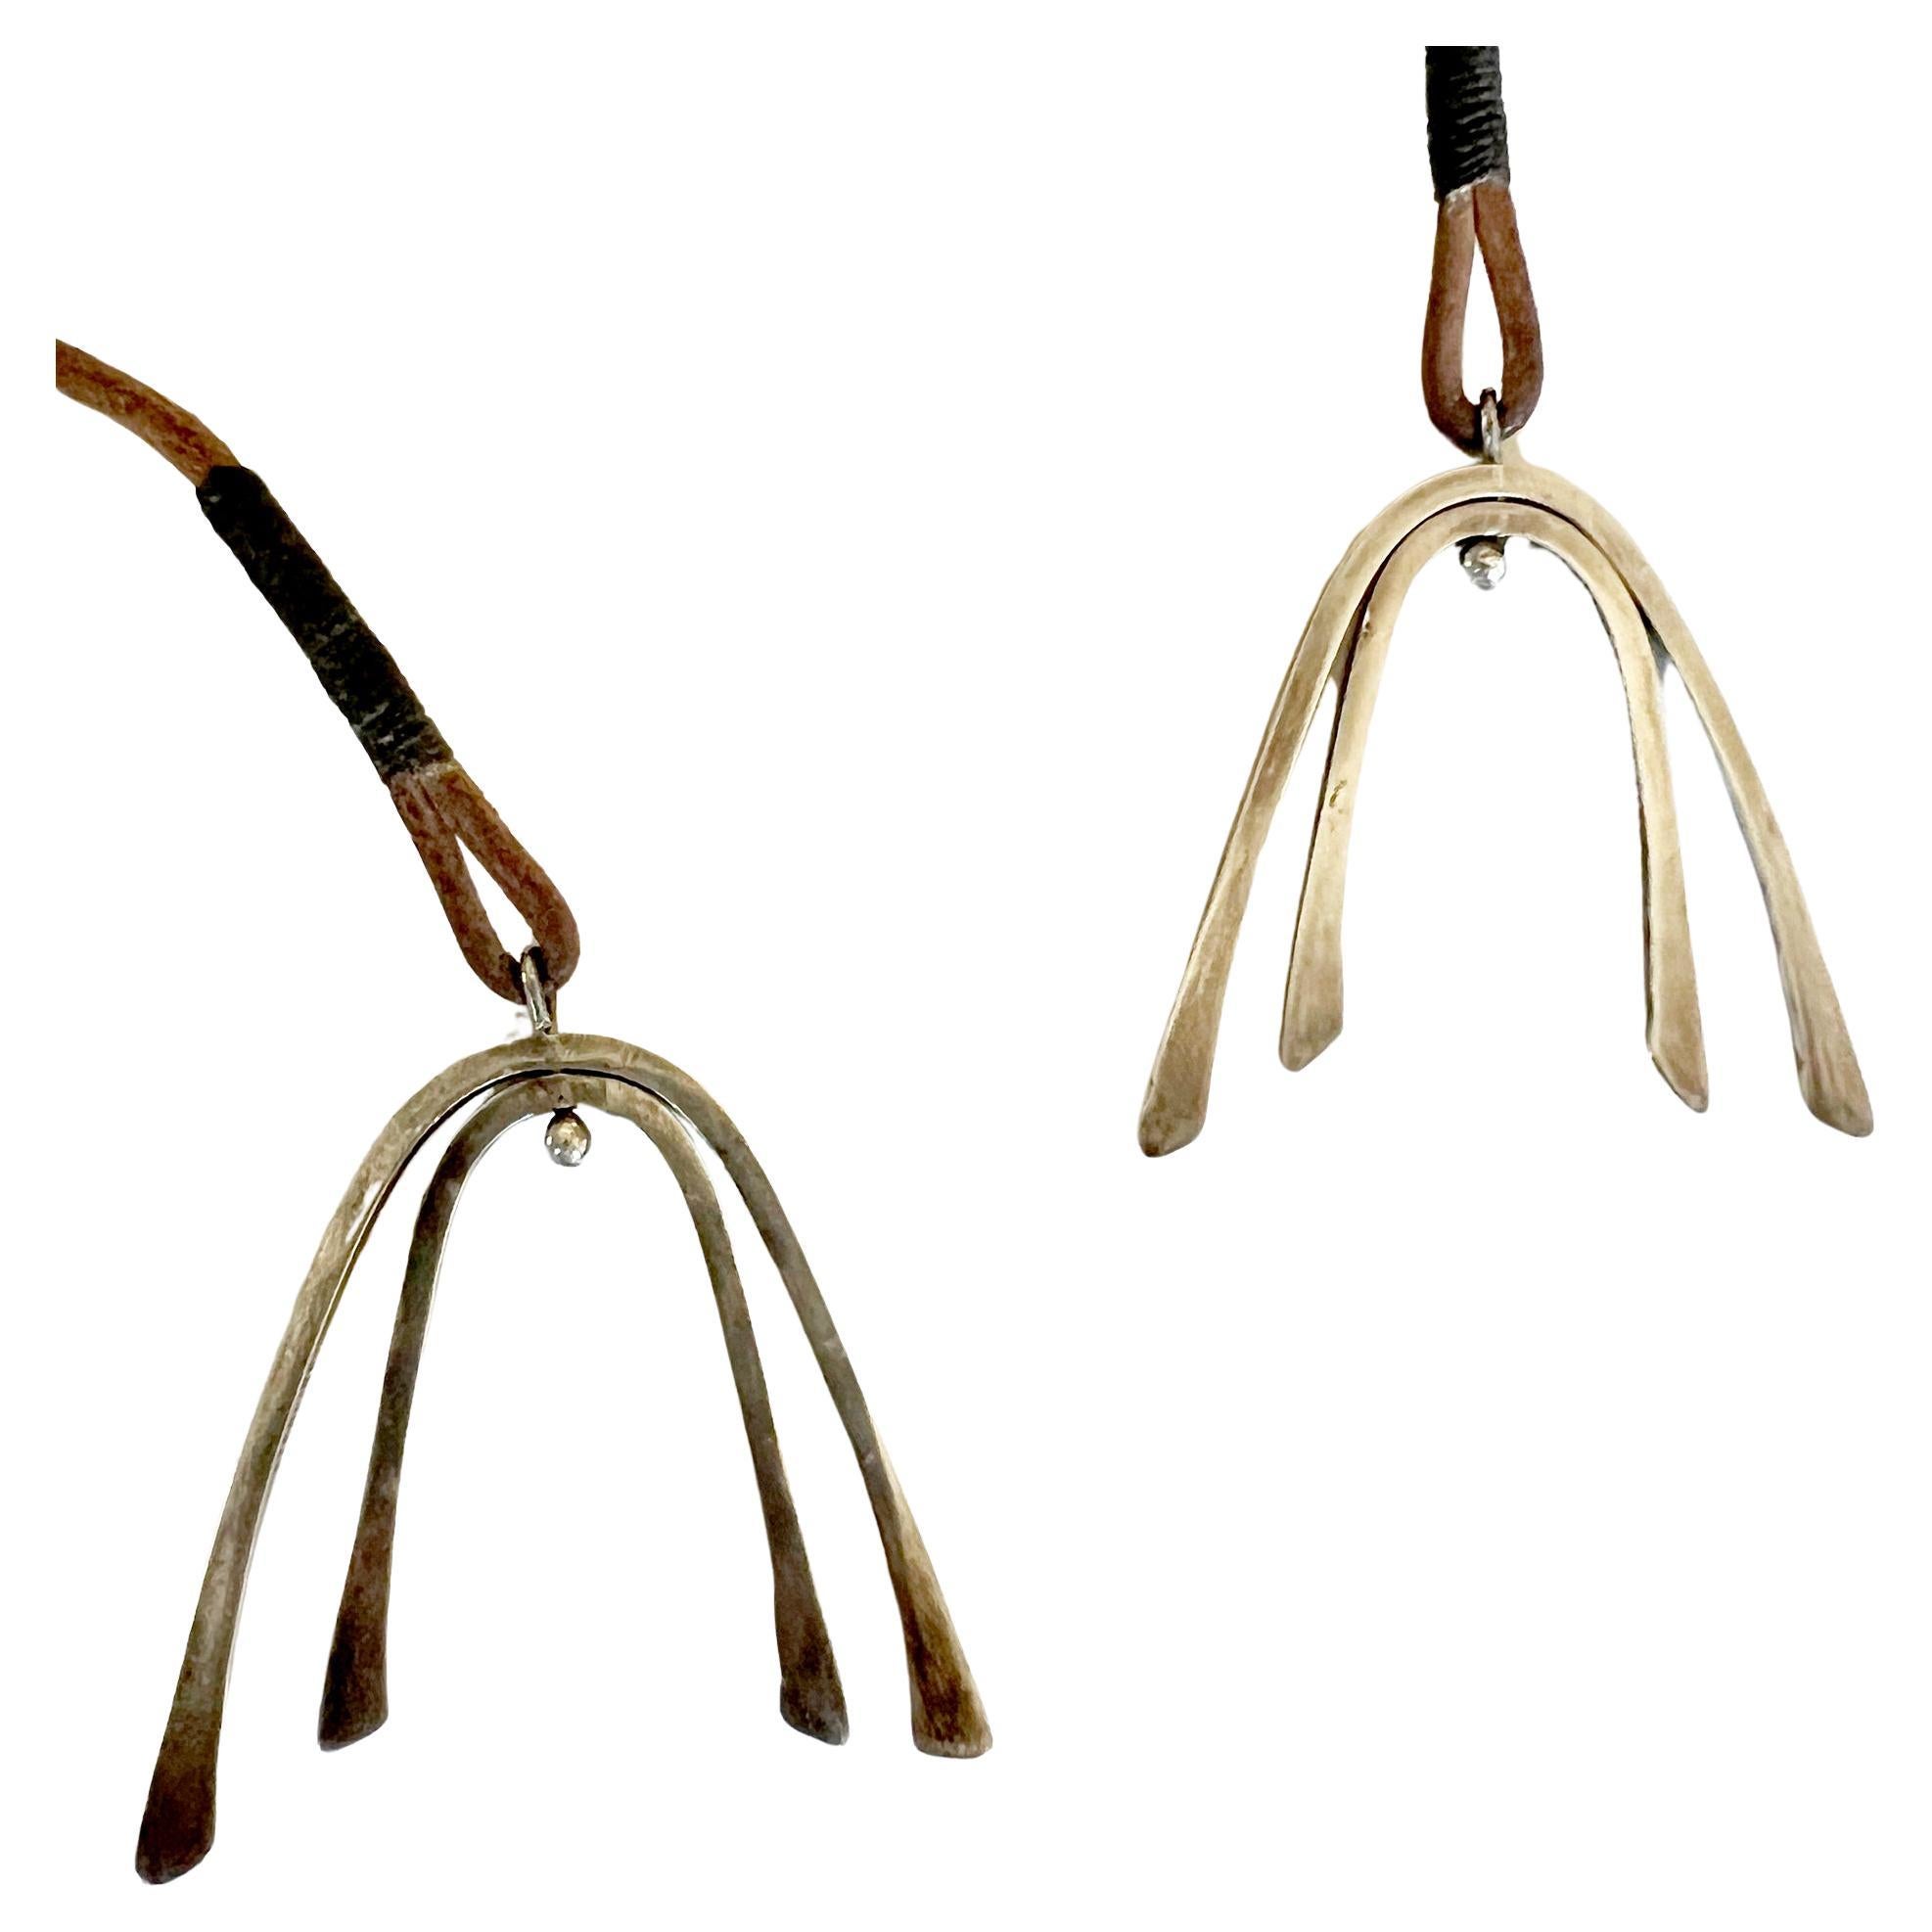 Seltene Lariat-Halskette aus den 1950er Jahren mit kinetischen Wünschelruten-Anhängern aus Sterlingsilber, geschaffen von Betty Cooke aus Baltimore, Maryland.  Die Anhänger werden von Hand an einer Lederschnur befestigt. Sie messen jeweils 1,75